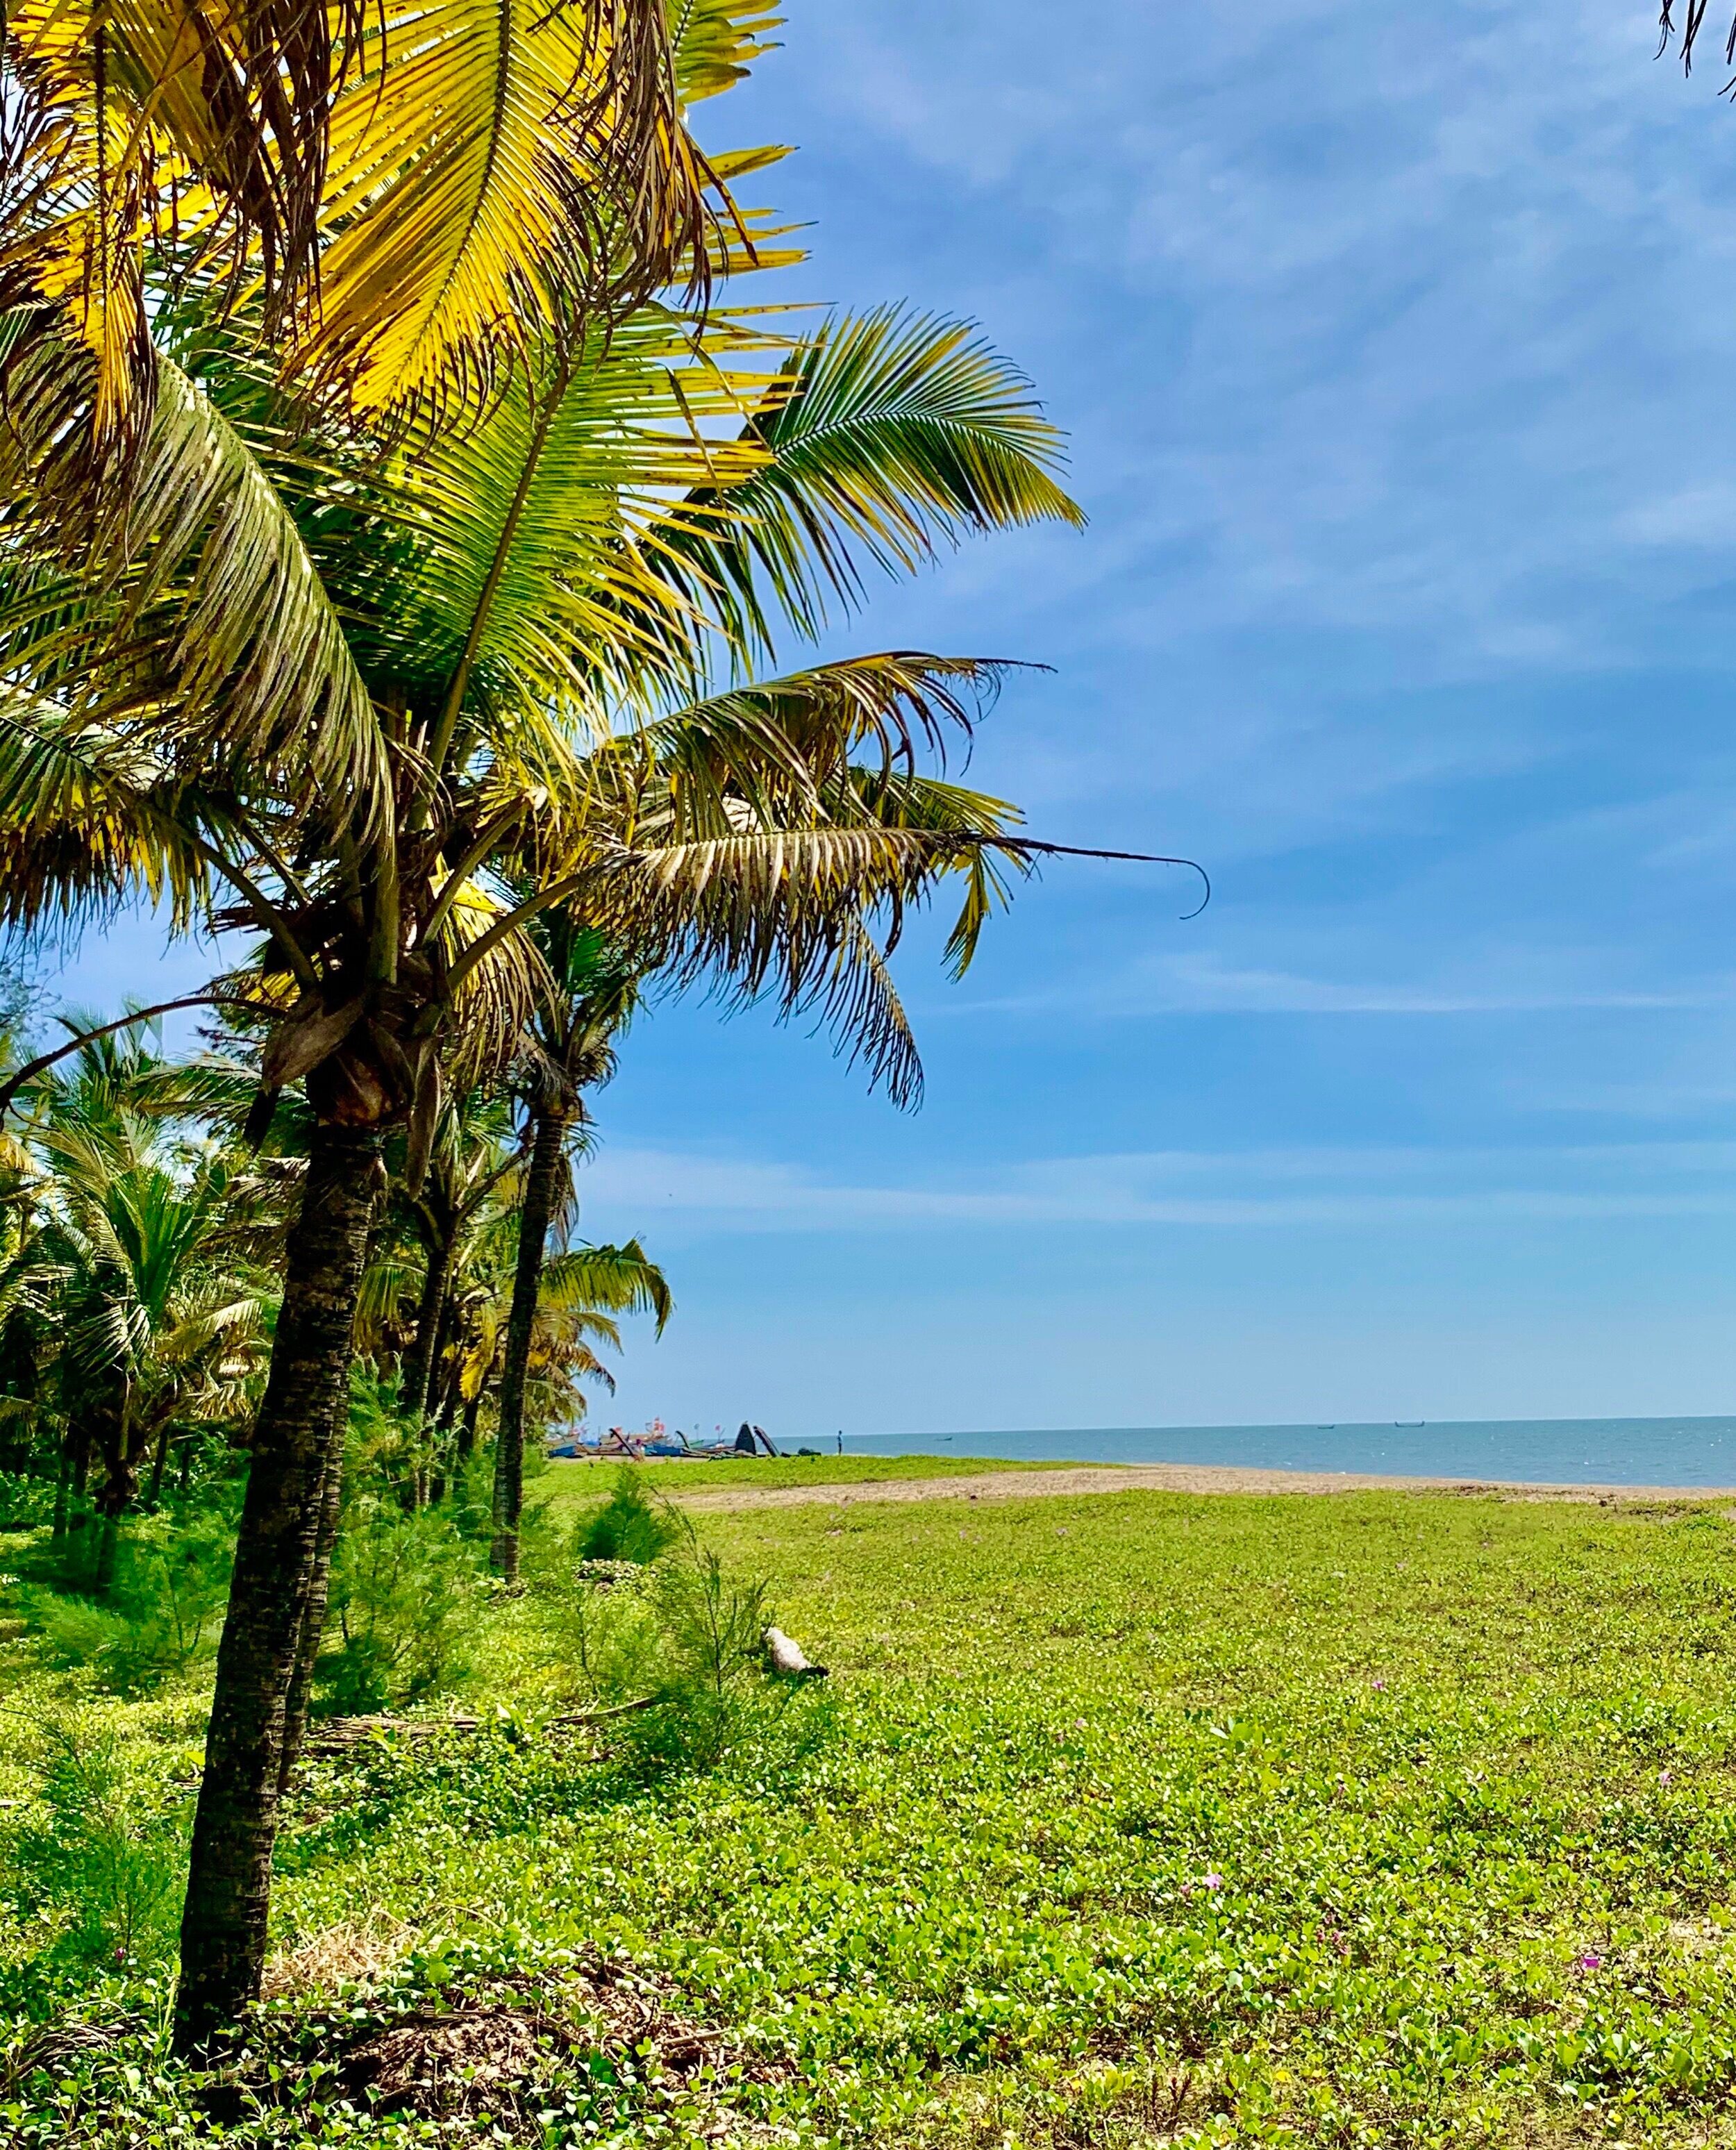 Keralan coast. 